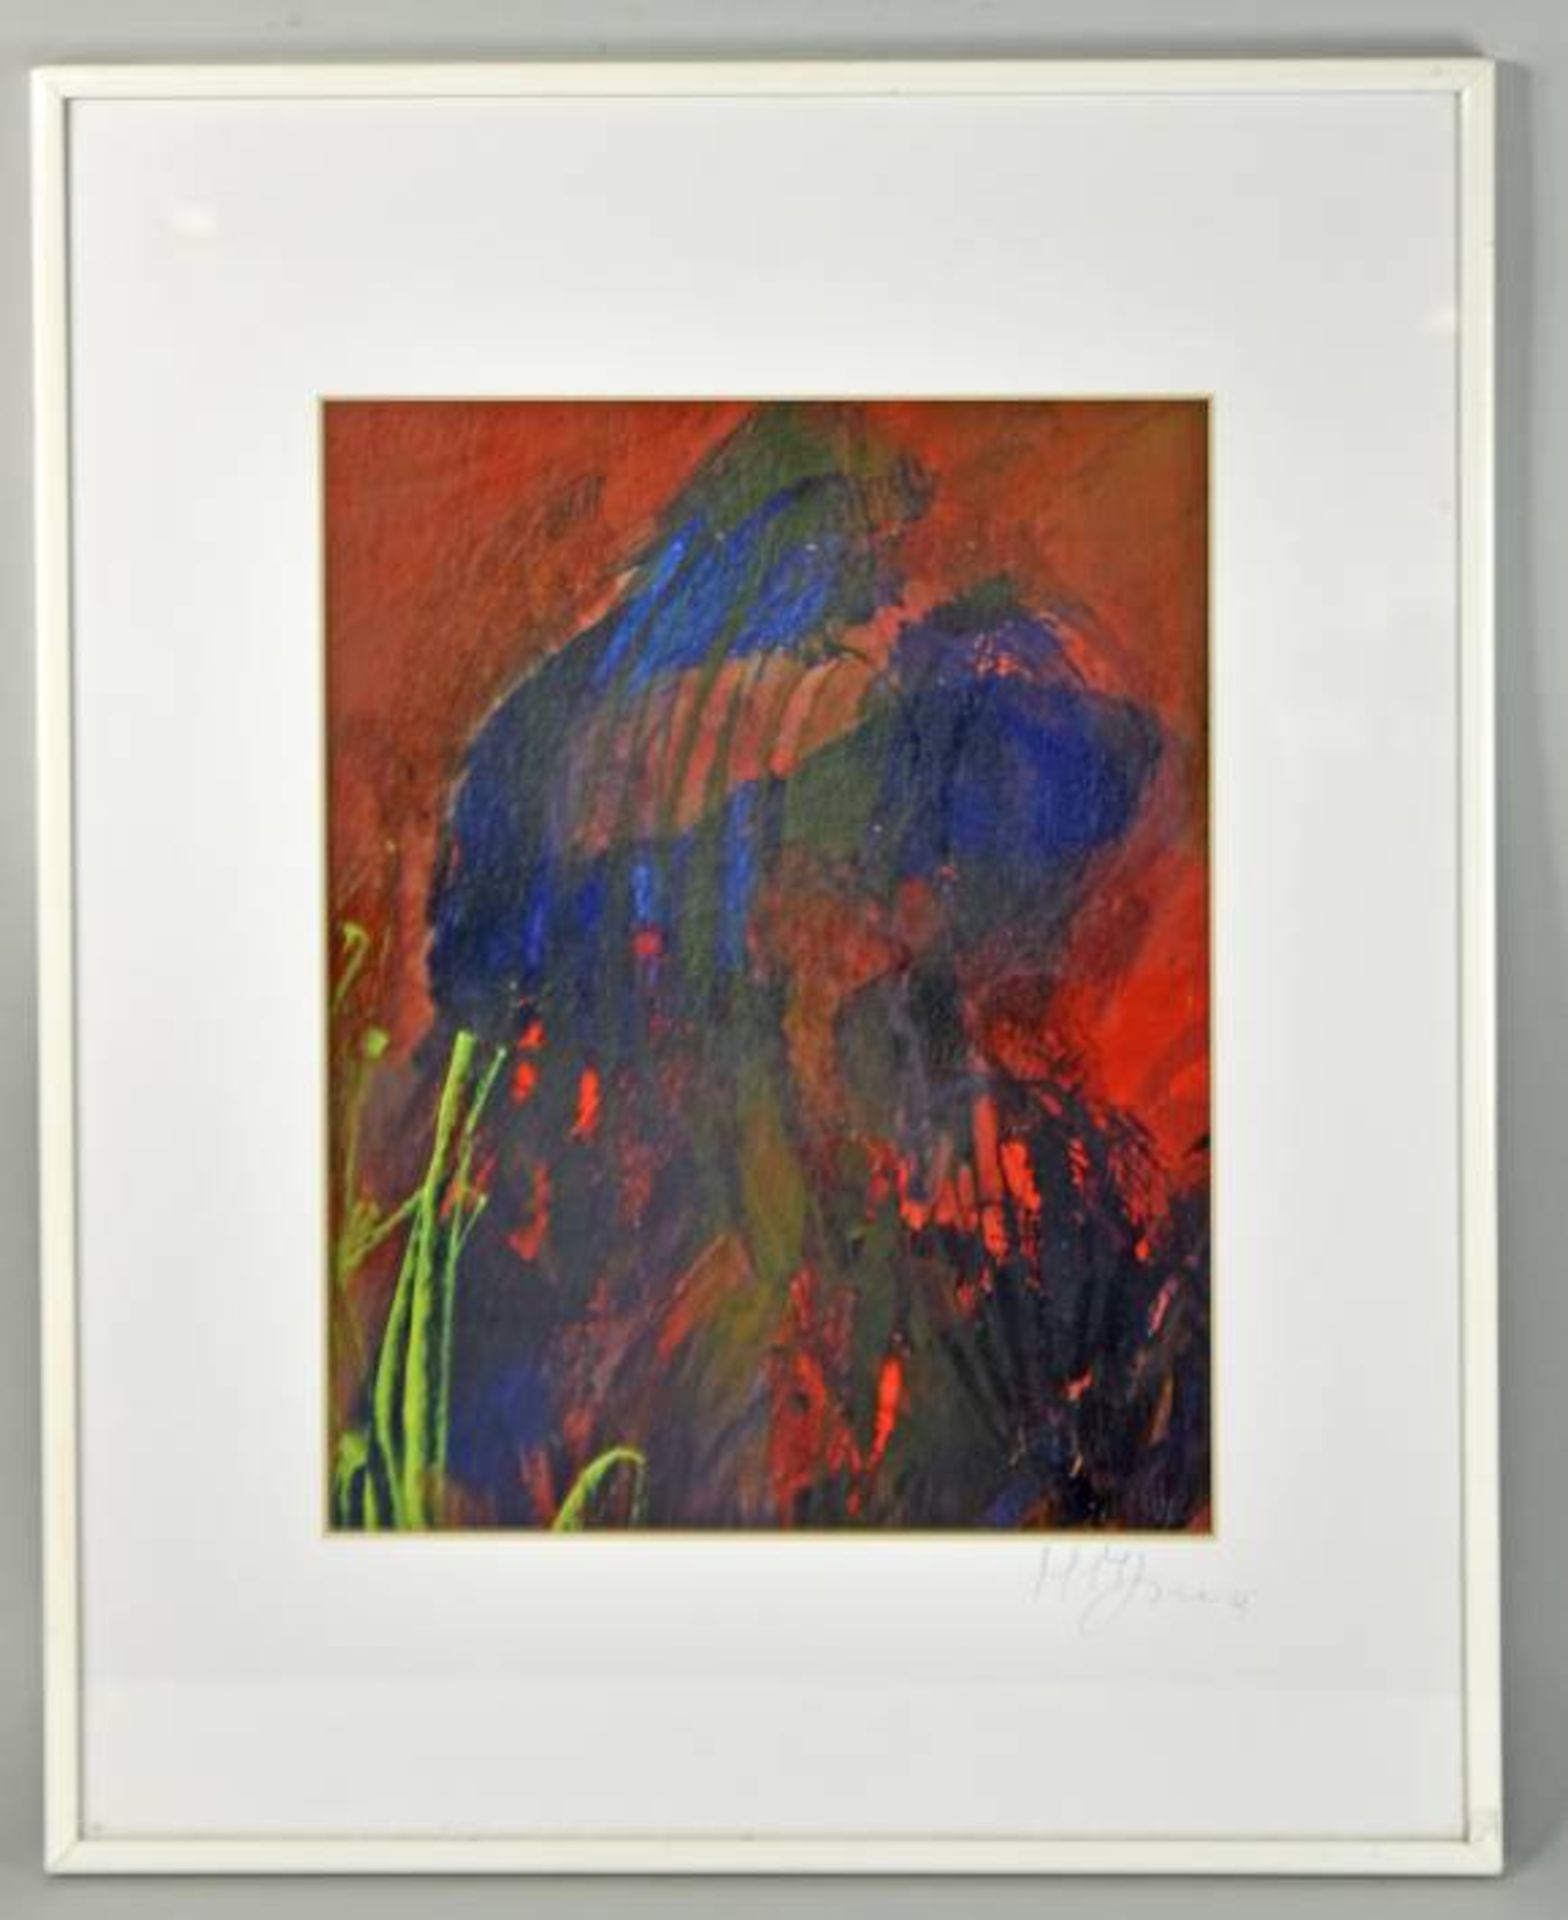 MANZECCHI-MÜLLER Mimi (1940 Pforzheim) "Abstrakt", Komposition in Rot- und Blautönen, Ölgemälde - Bild 3 aus 5